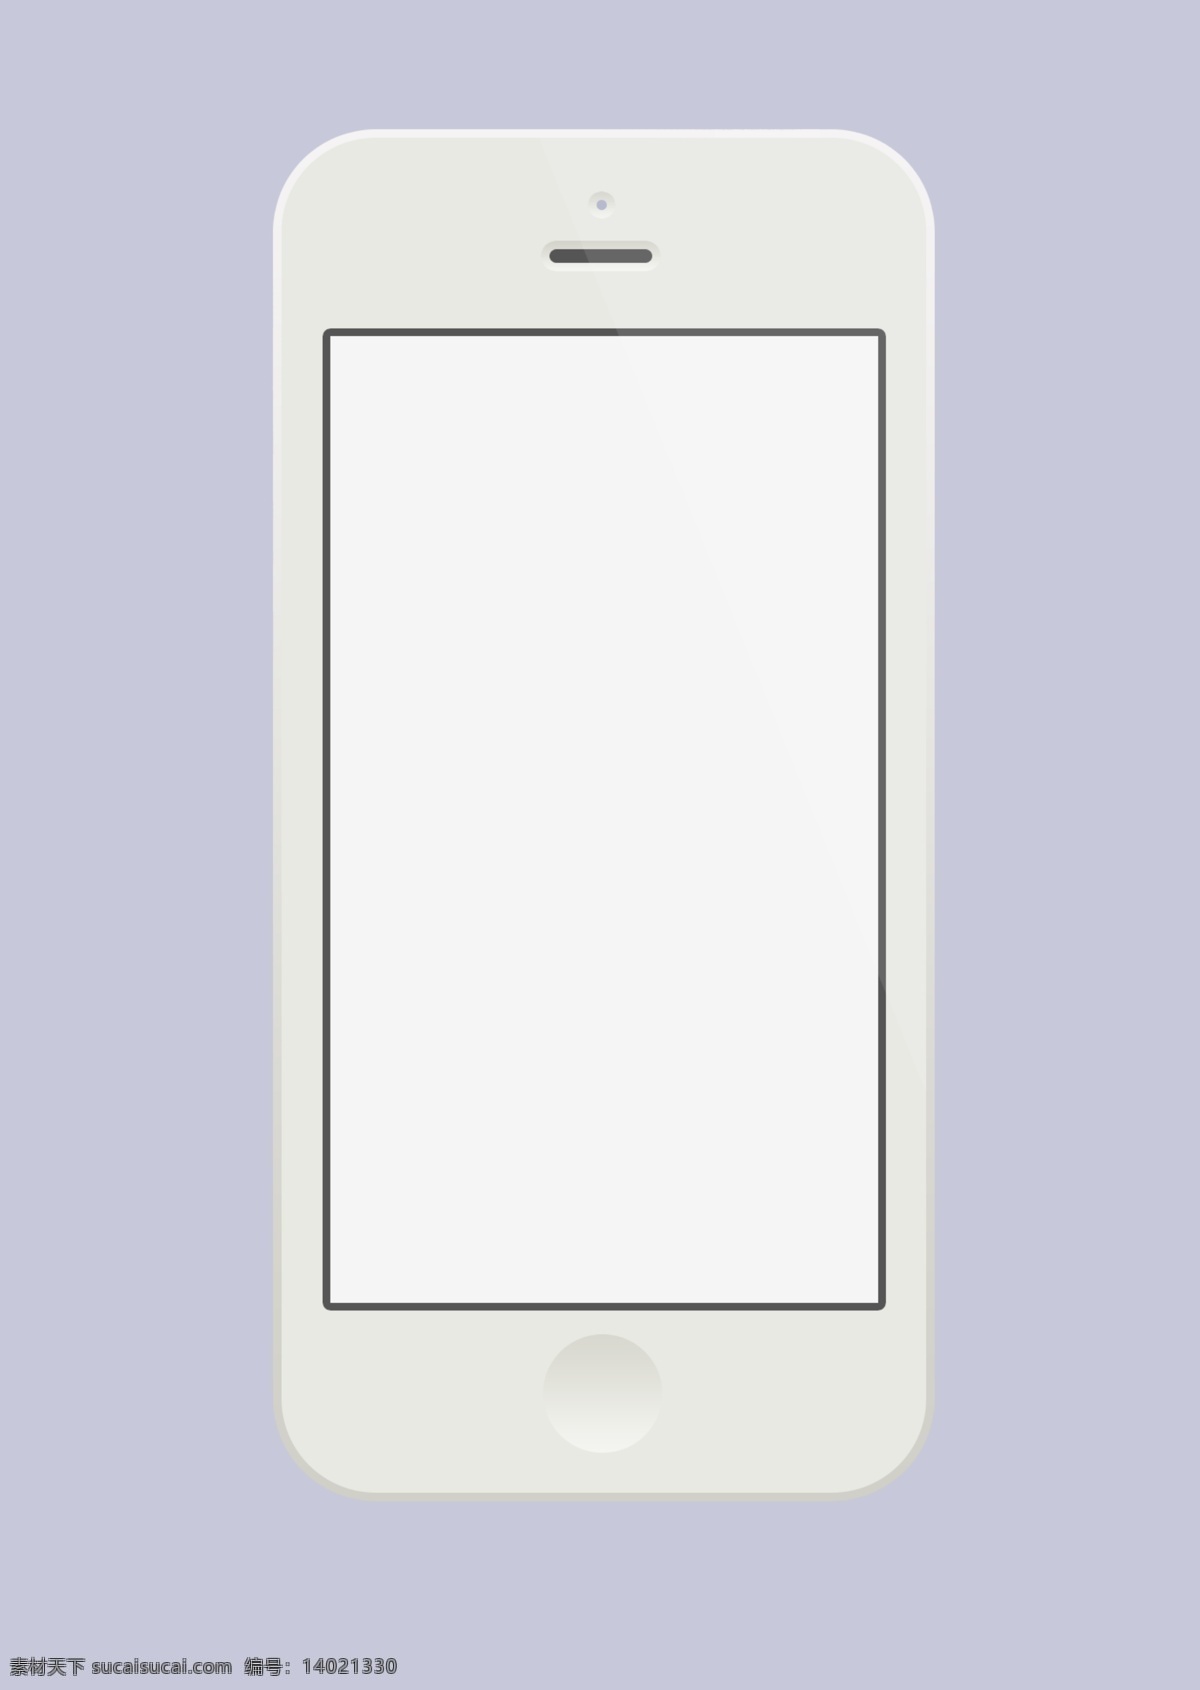 场景 中 苹果 iphone 手机 样机 模板 iphone5s 高清手机壁纸 场景样机 运动耳机 mockup 模版 展示 ui页面展示 appshowcase 样机模板 智能对象涂层 听歌状态